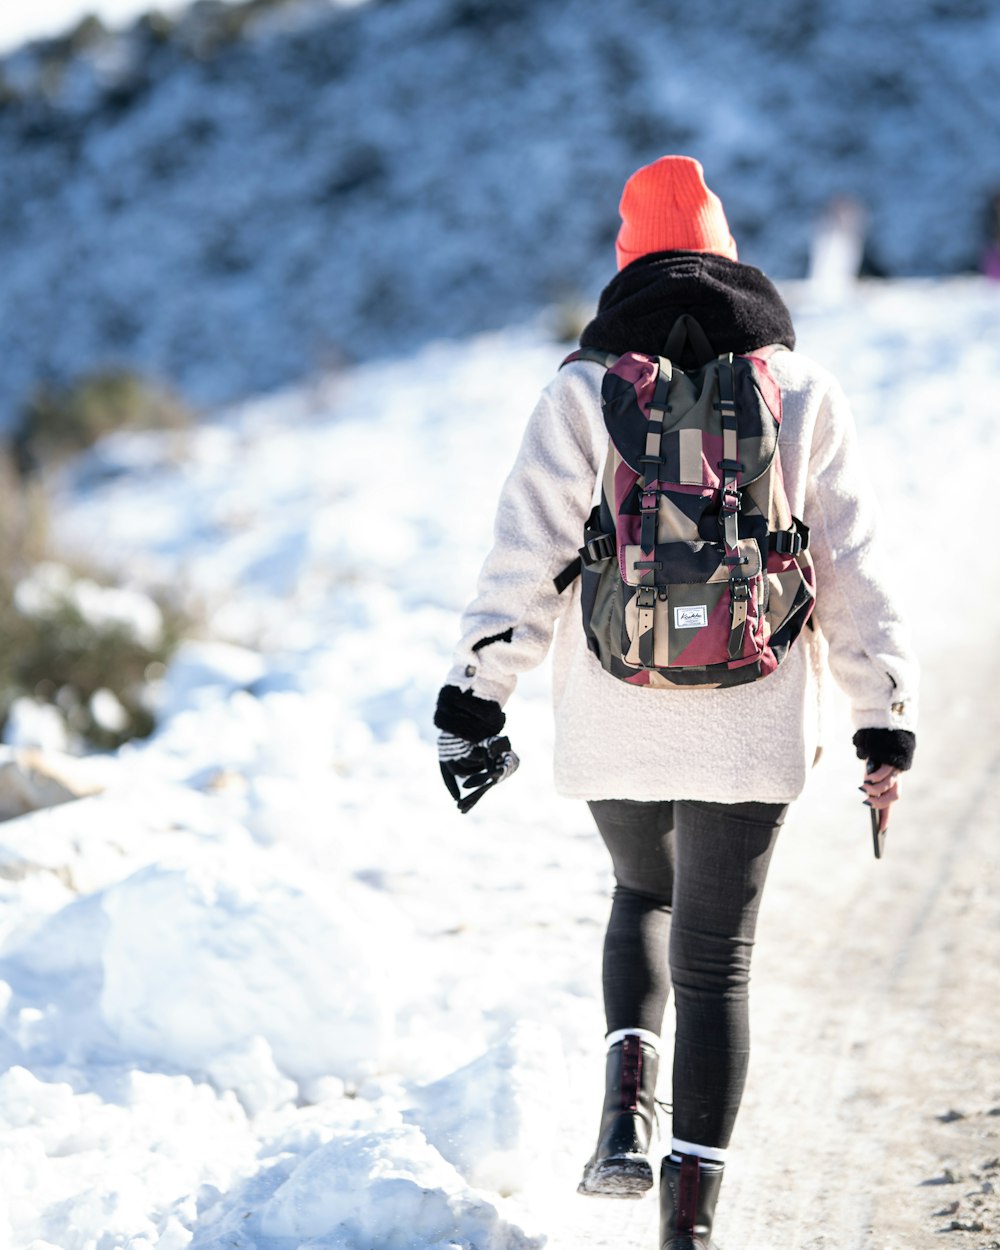 Frau in weißer Jacke und schwarzer Hose geht tagsüber auf schneebedecktem Boden spazieren